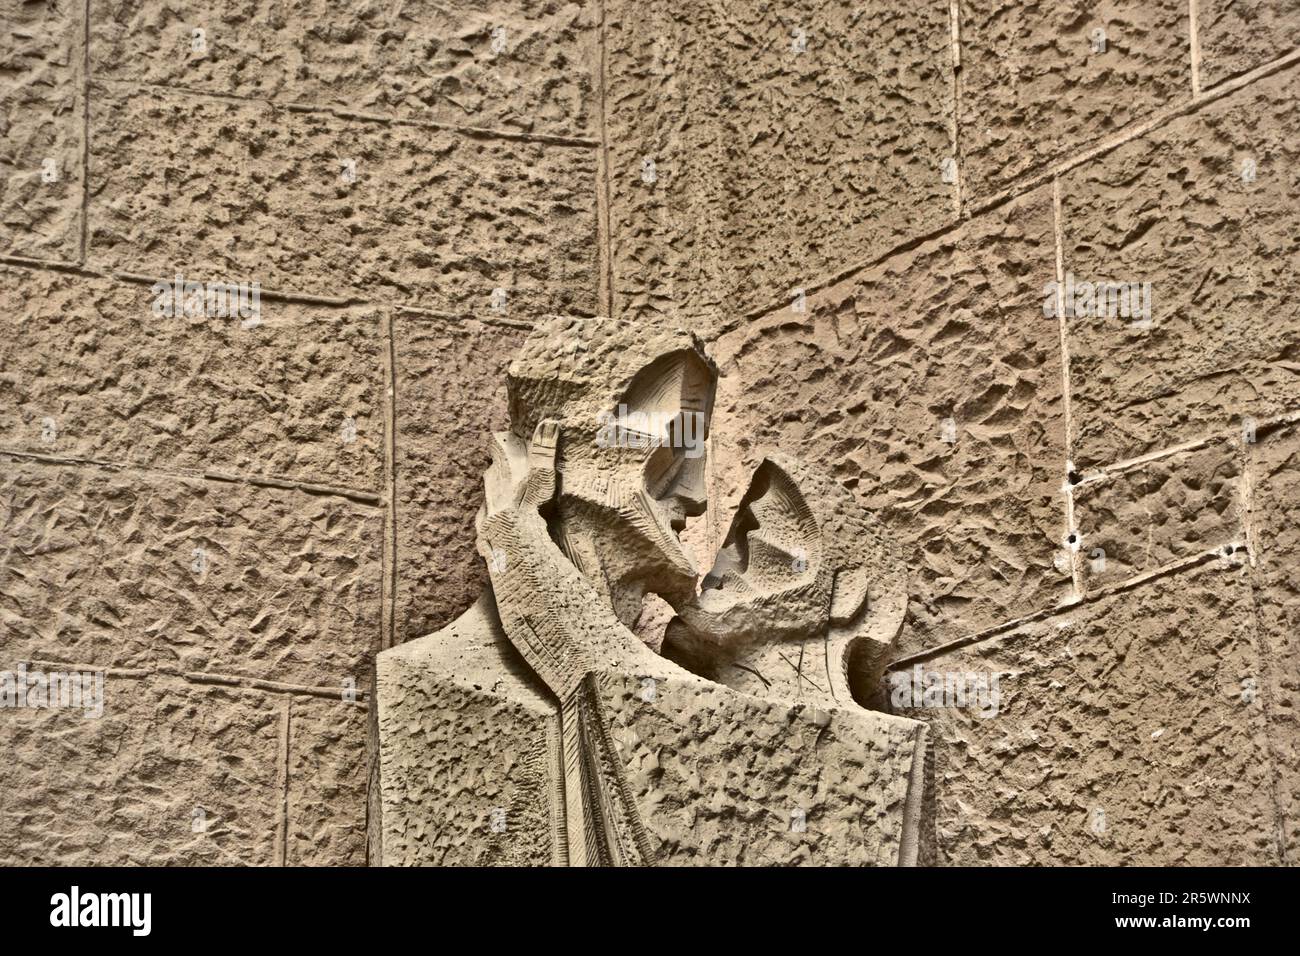 Barcelone, Espagne - août 2014 19th : façade extérieure de la Sagrada Familia. Concentrez-vous sur une sculpture moderne représentant le baiser du traître Judas. Banque D'Images